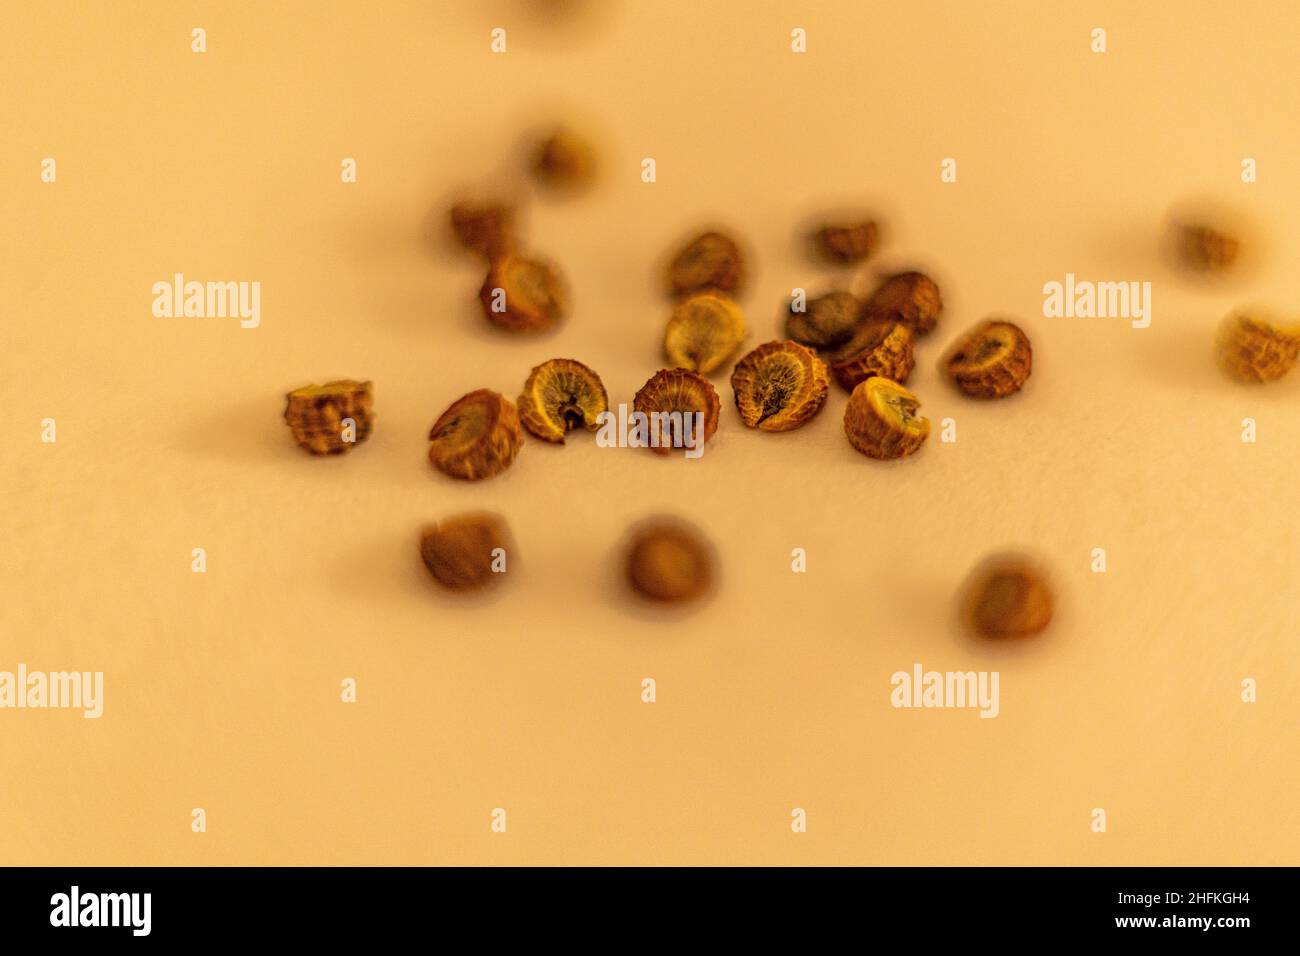 Malva sylvestris var. mauritiana 'Zebrina' seeds close up Stock Photo